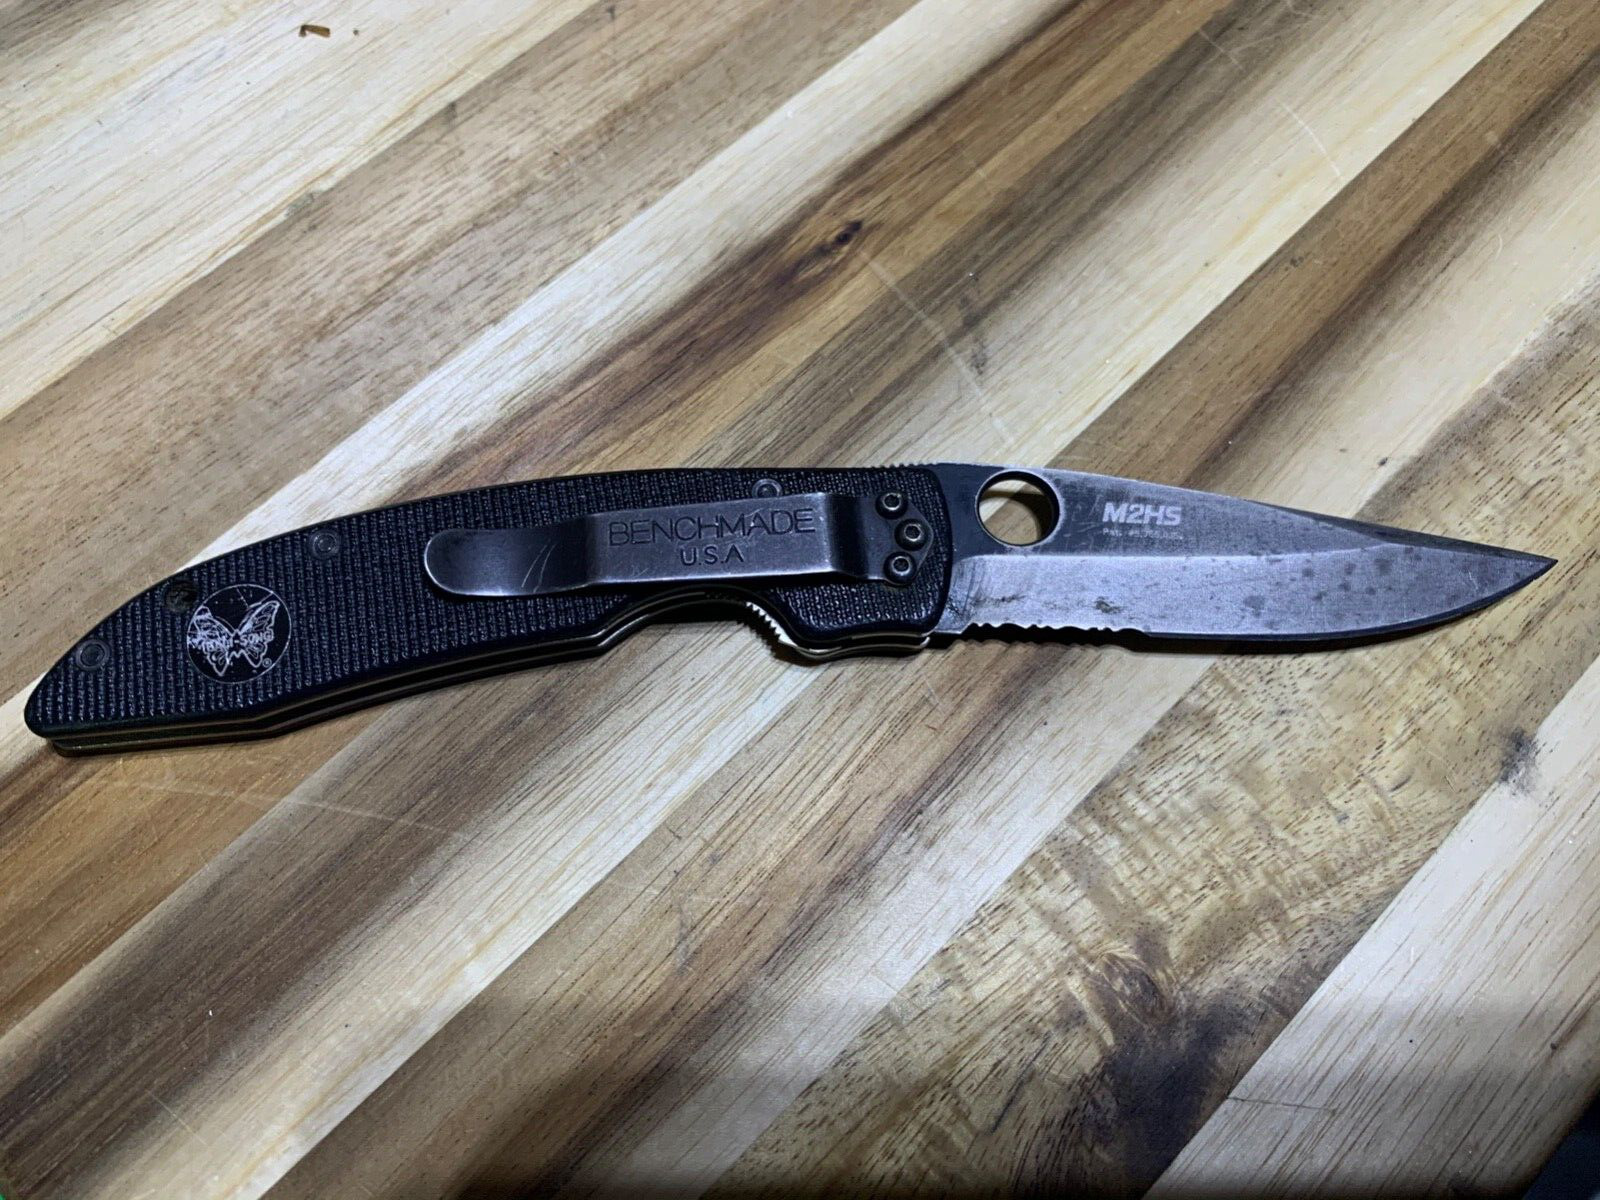 Vintage Benchmade AFCK M2HS steel knife (lot#20489)